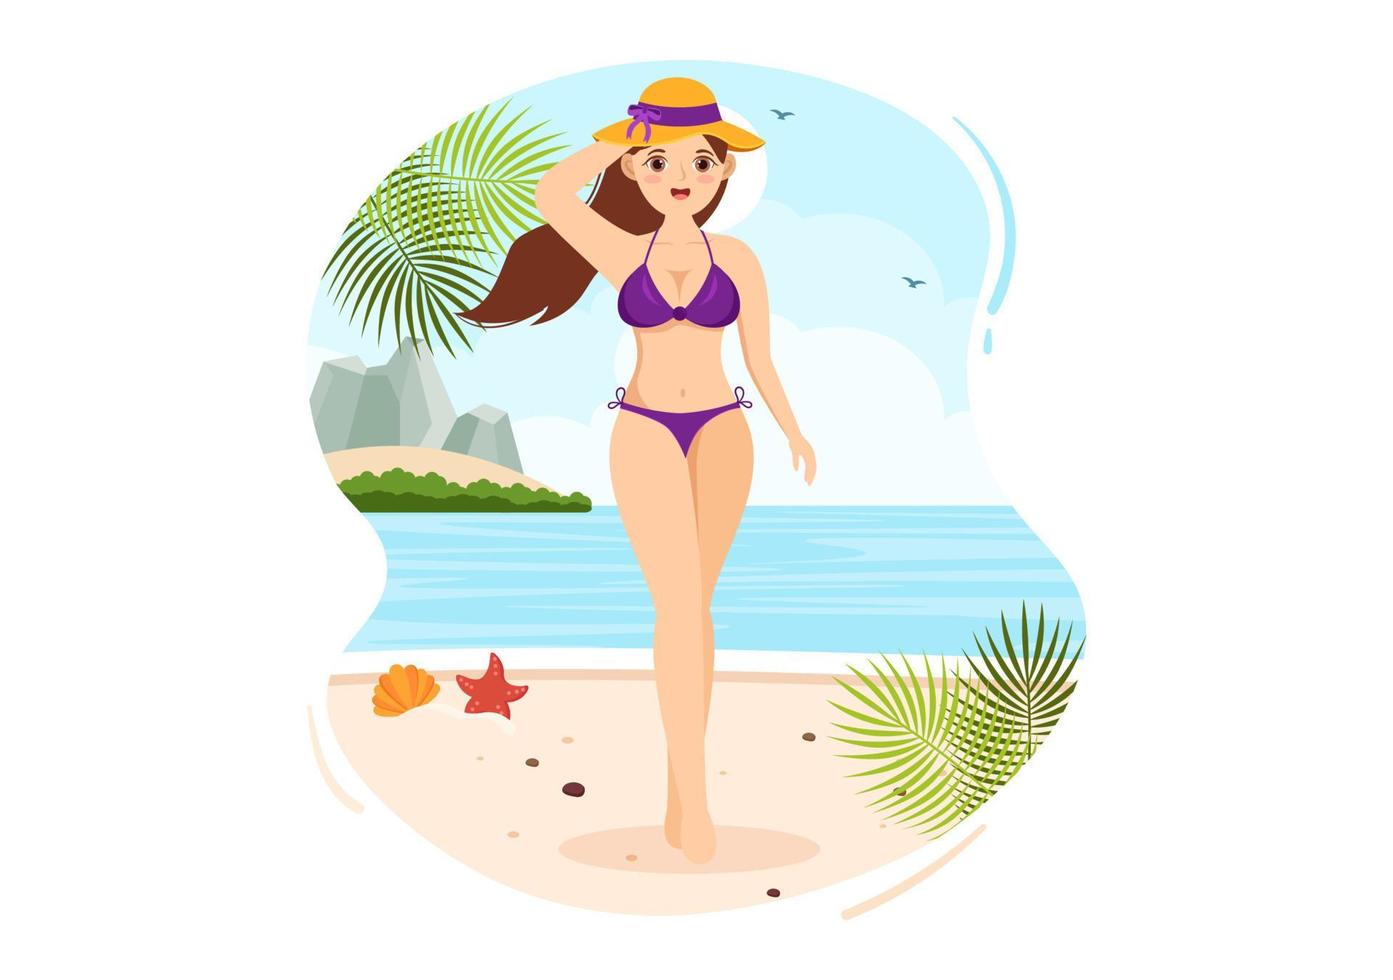 trajes de banho com diferentes designs de biquínis e maiôs para mulheres na praia de verão em estilo plano ilustração de modelos desenhados à mão de desenhos animados vetor